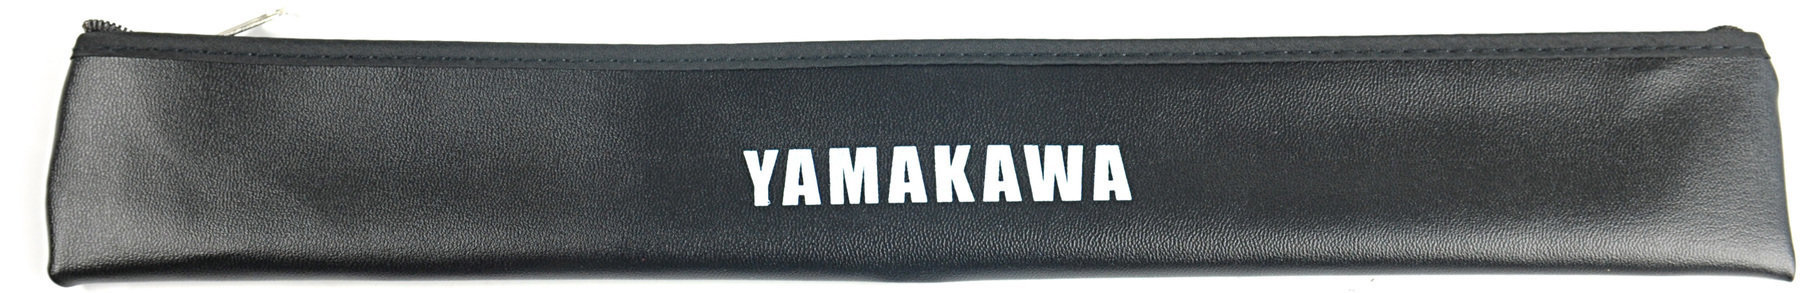 Hoes voor blokfluit Yamakawa RB-S2 Hoes voor blokfluit